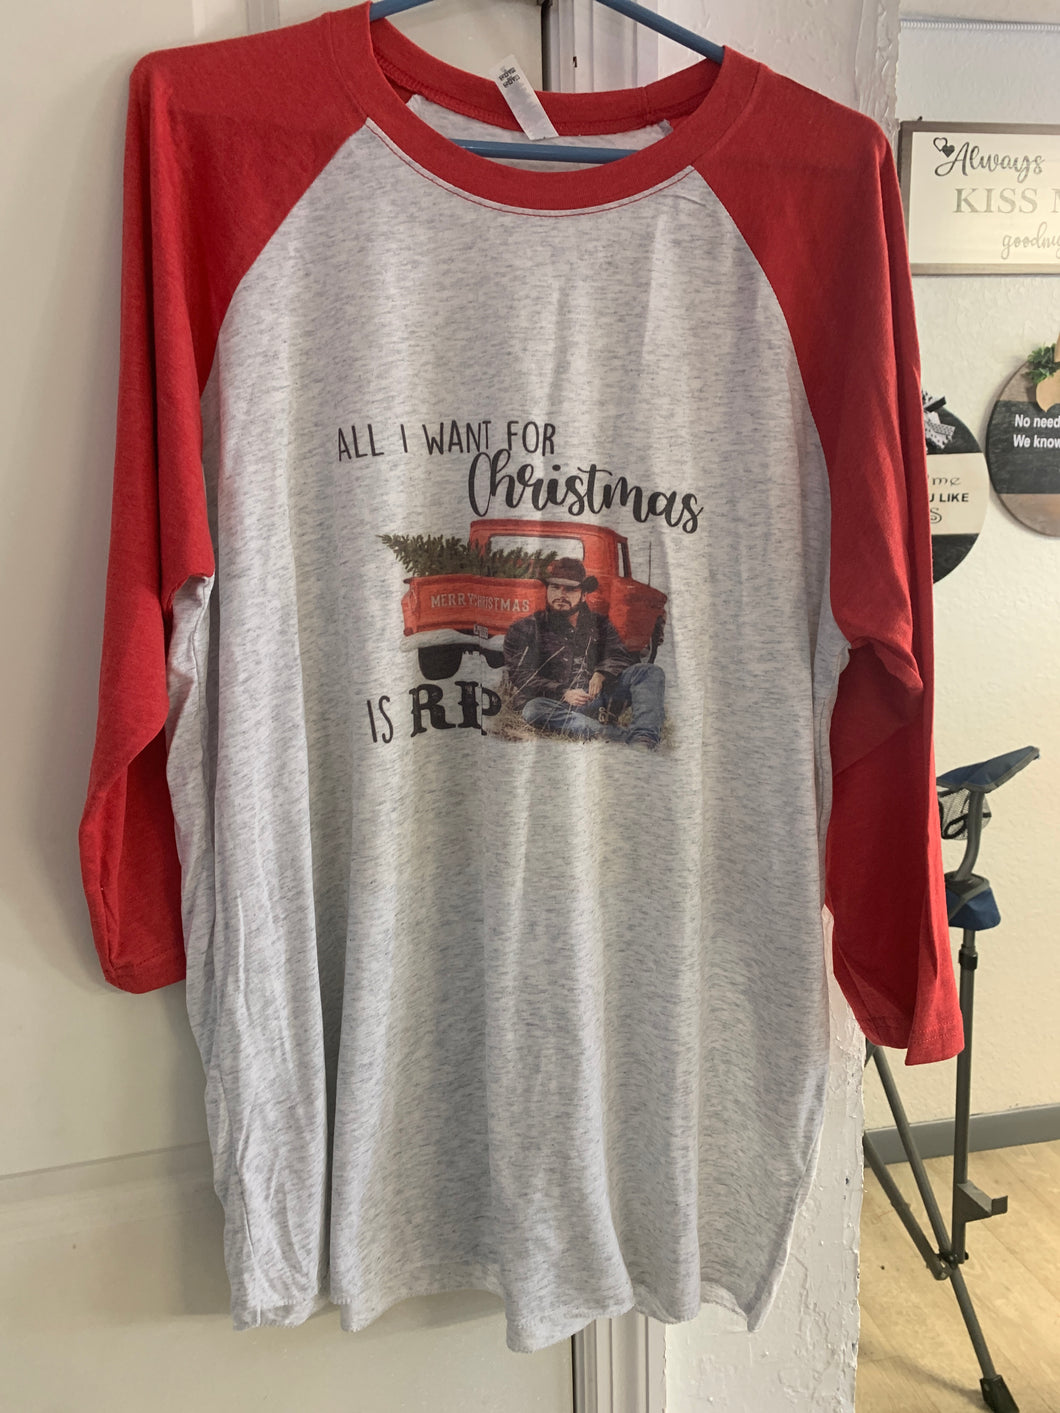 Yellowstone (rip for Christmas) raglan baseball shirt